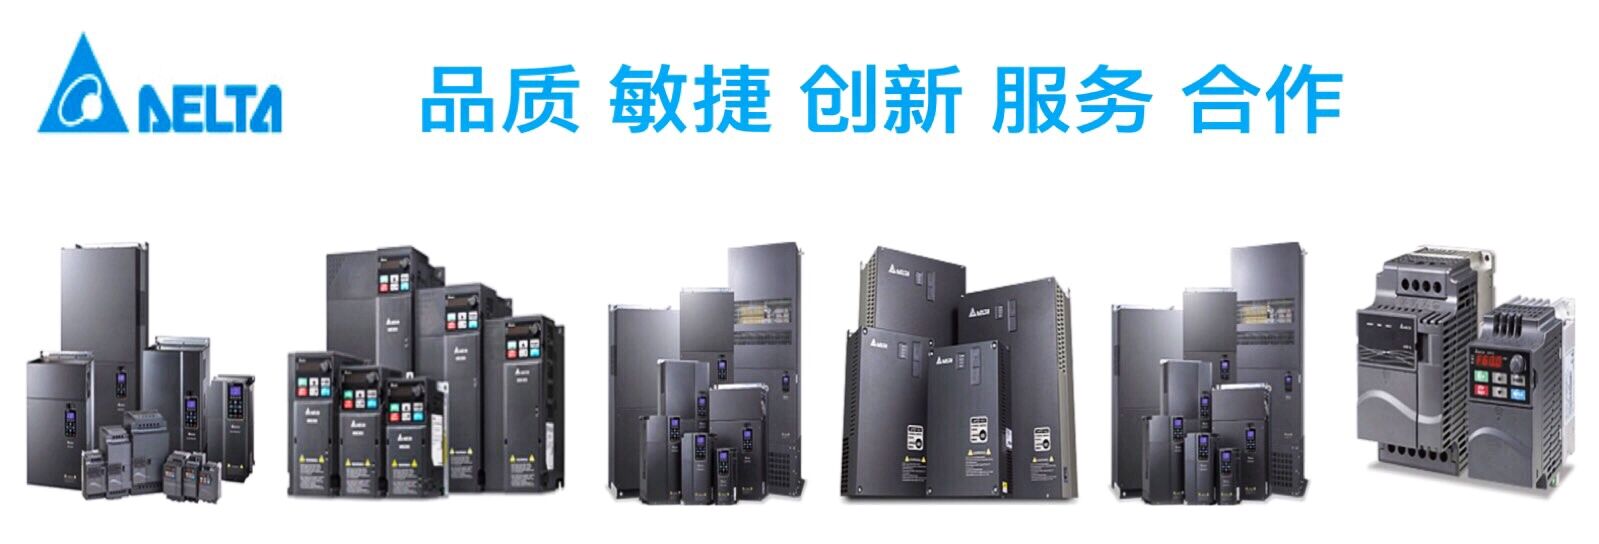 上海宽映自动化设备有限公司